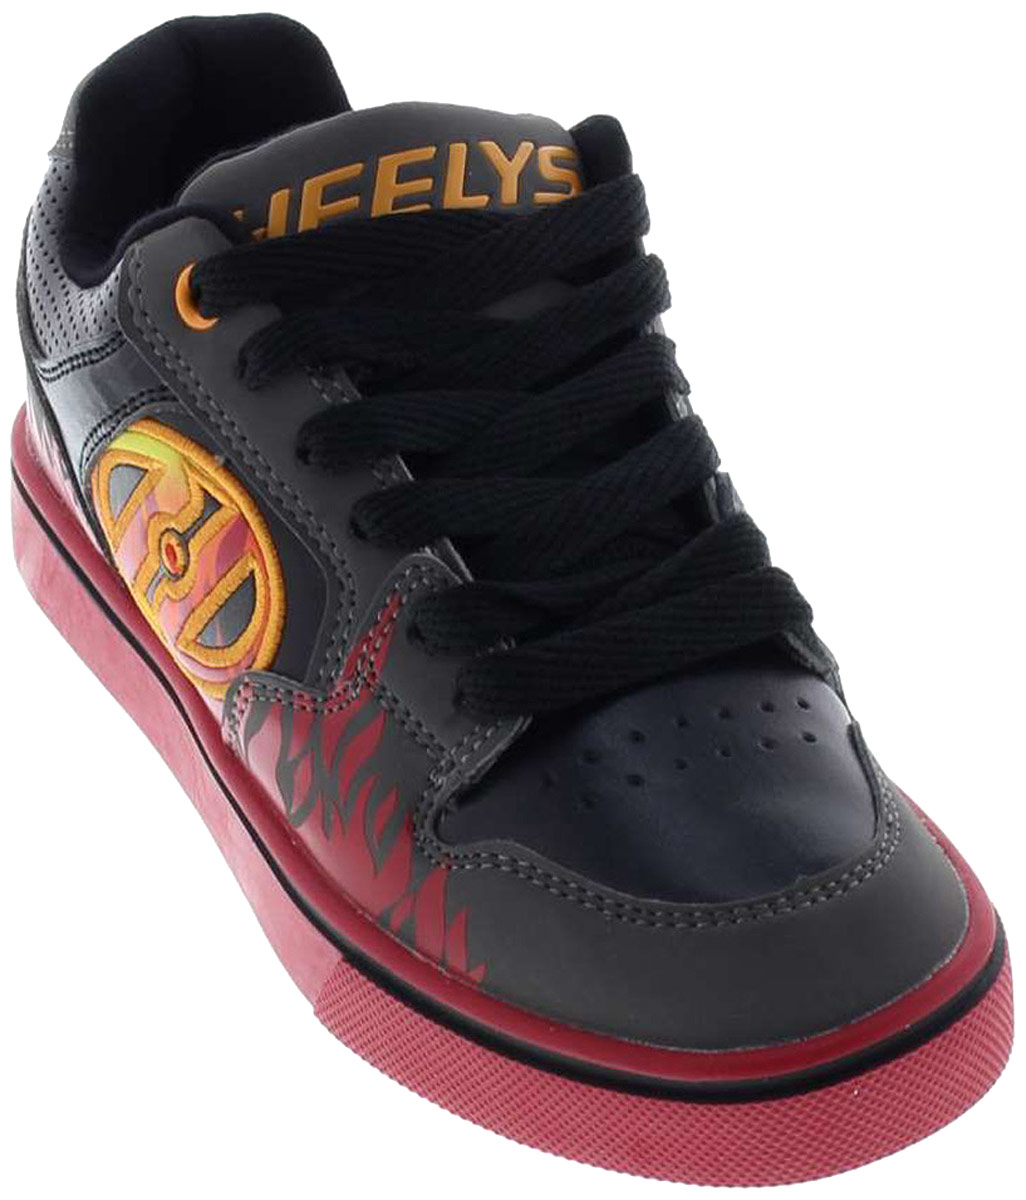 Кроссовки роликовые для мальчика Heelys Motion Plus, цвет: серый, красный. 770815. Размер 4 (34)